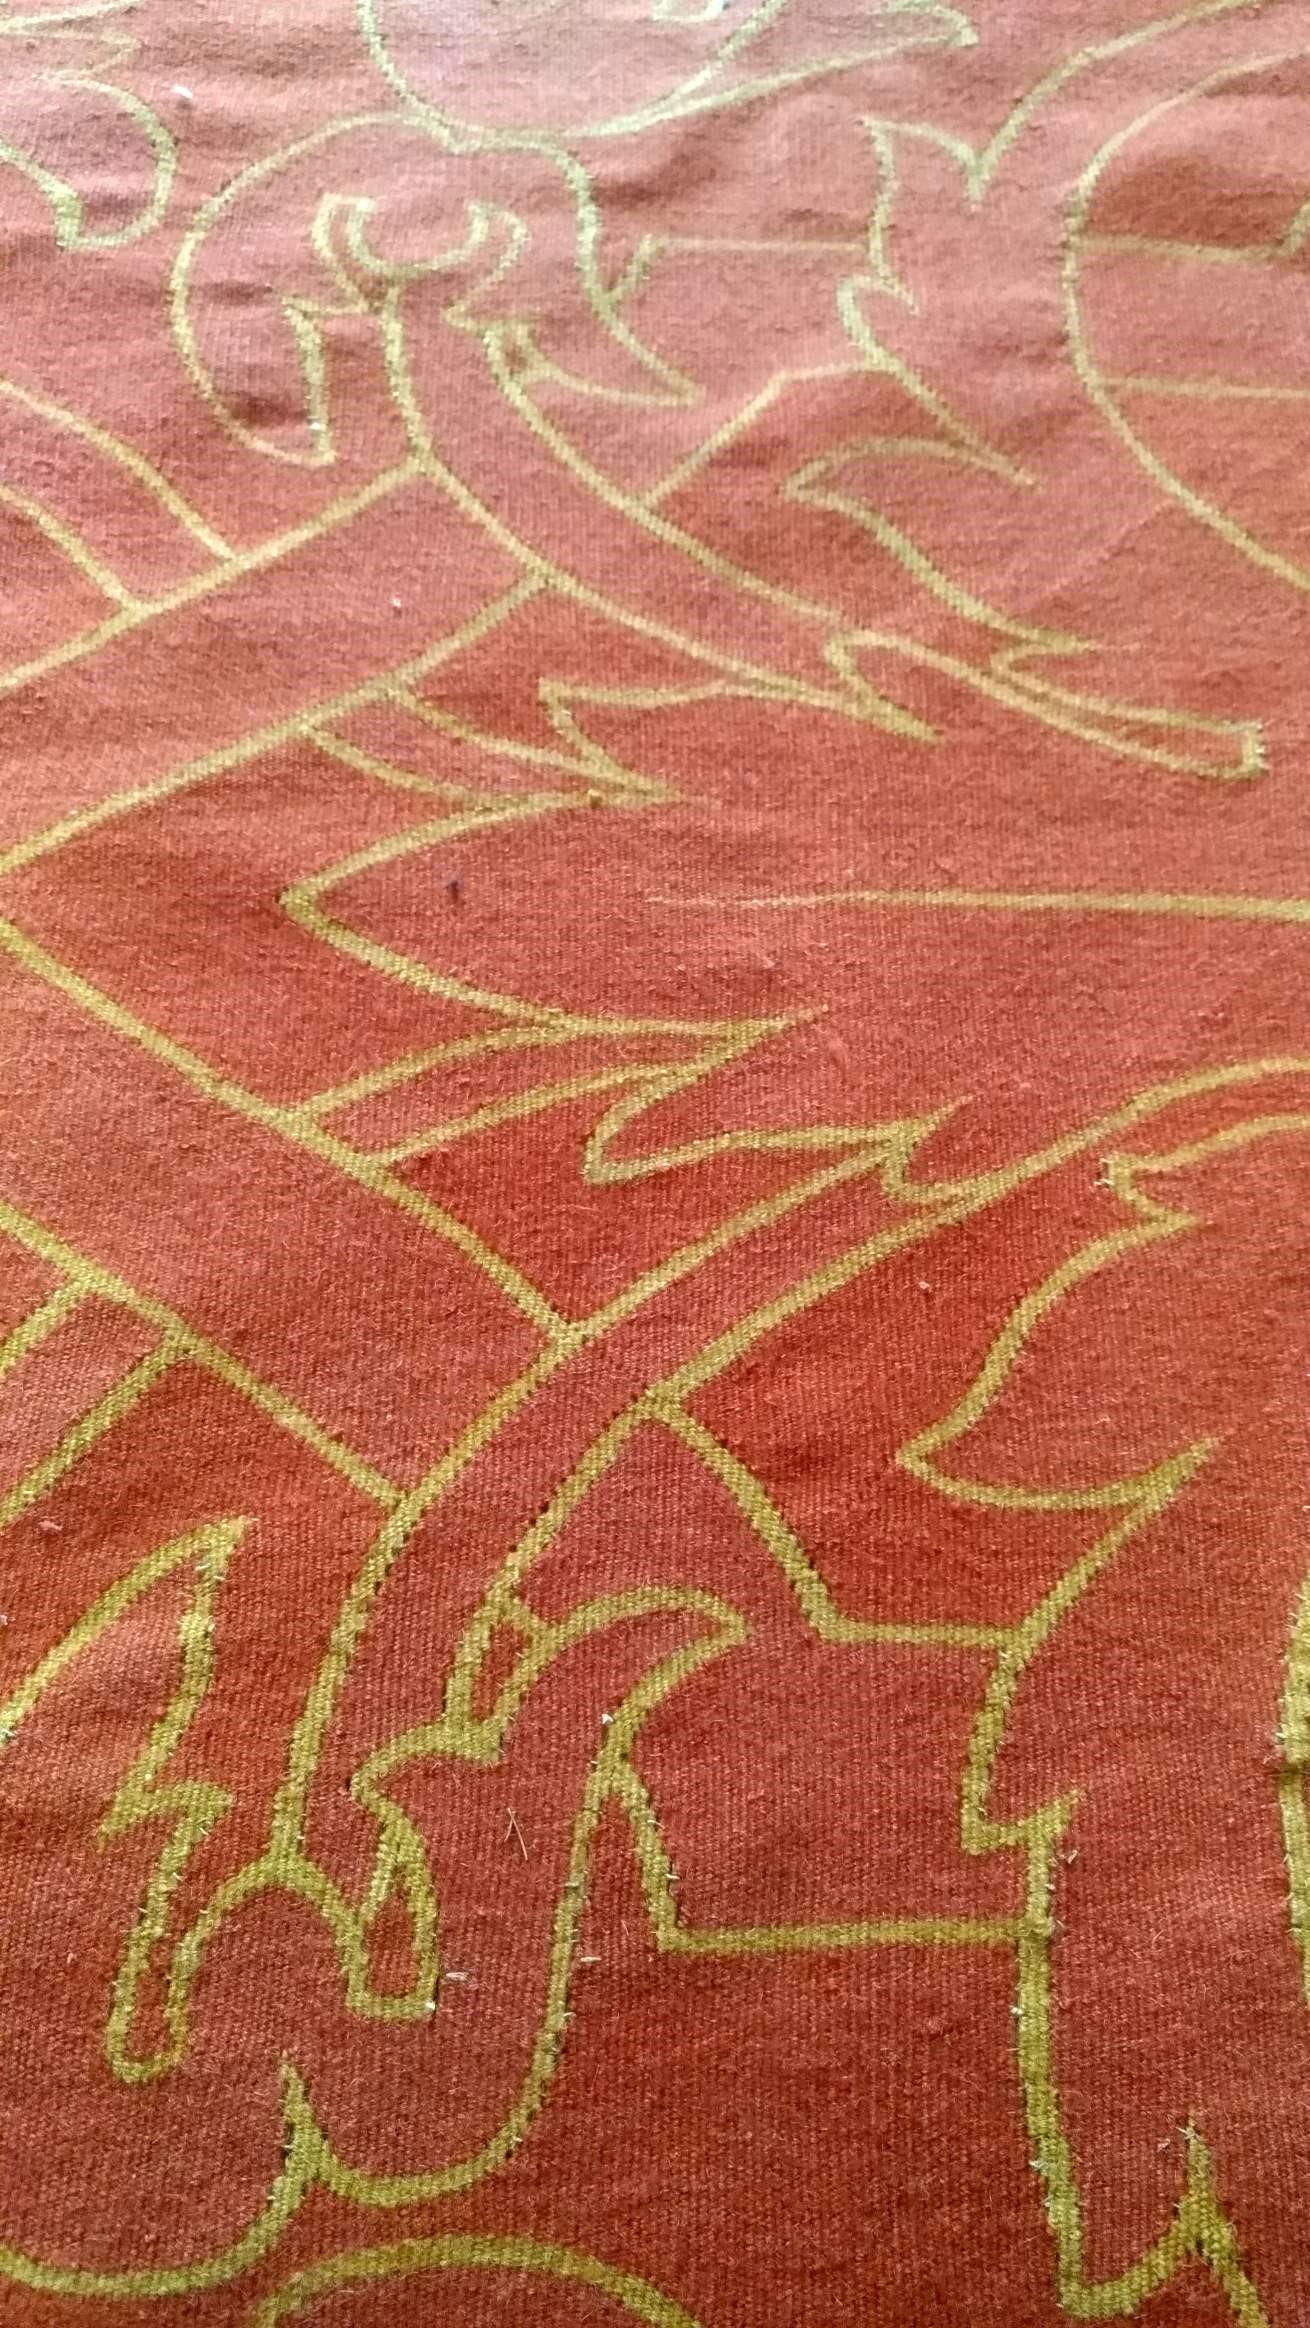 1010 - beau tapis français Aubusson du milieu du 20e siècle, avec un design Art Déco moderne, et de jolies couleurs entièrement tissé à la main avec de la laine sur une base de coton.